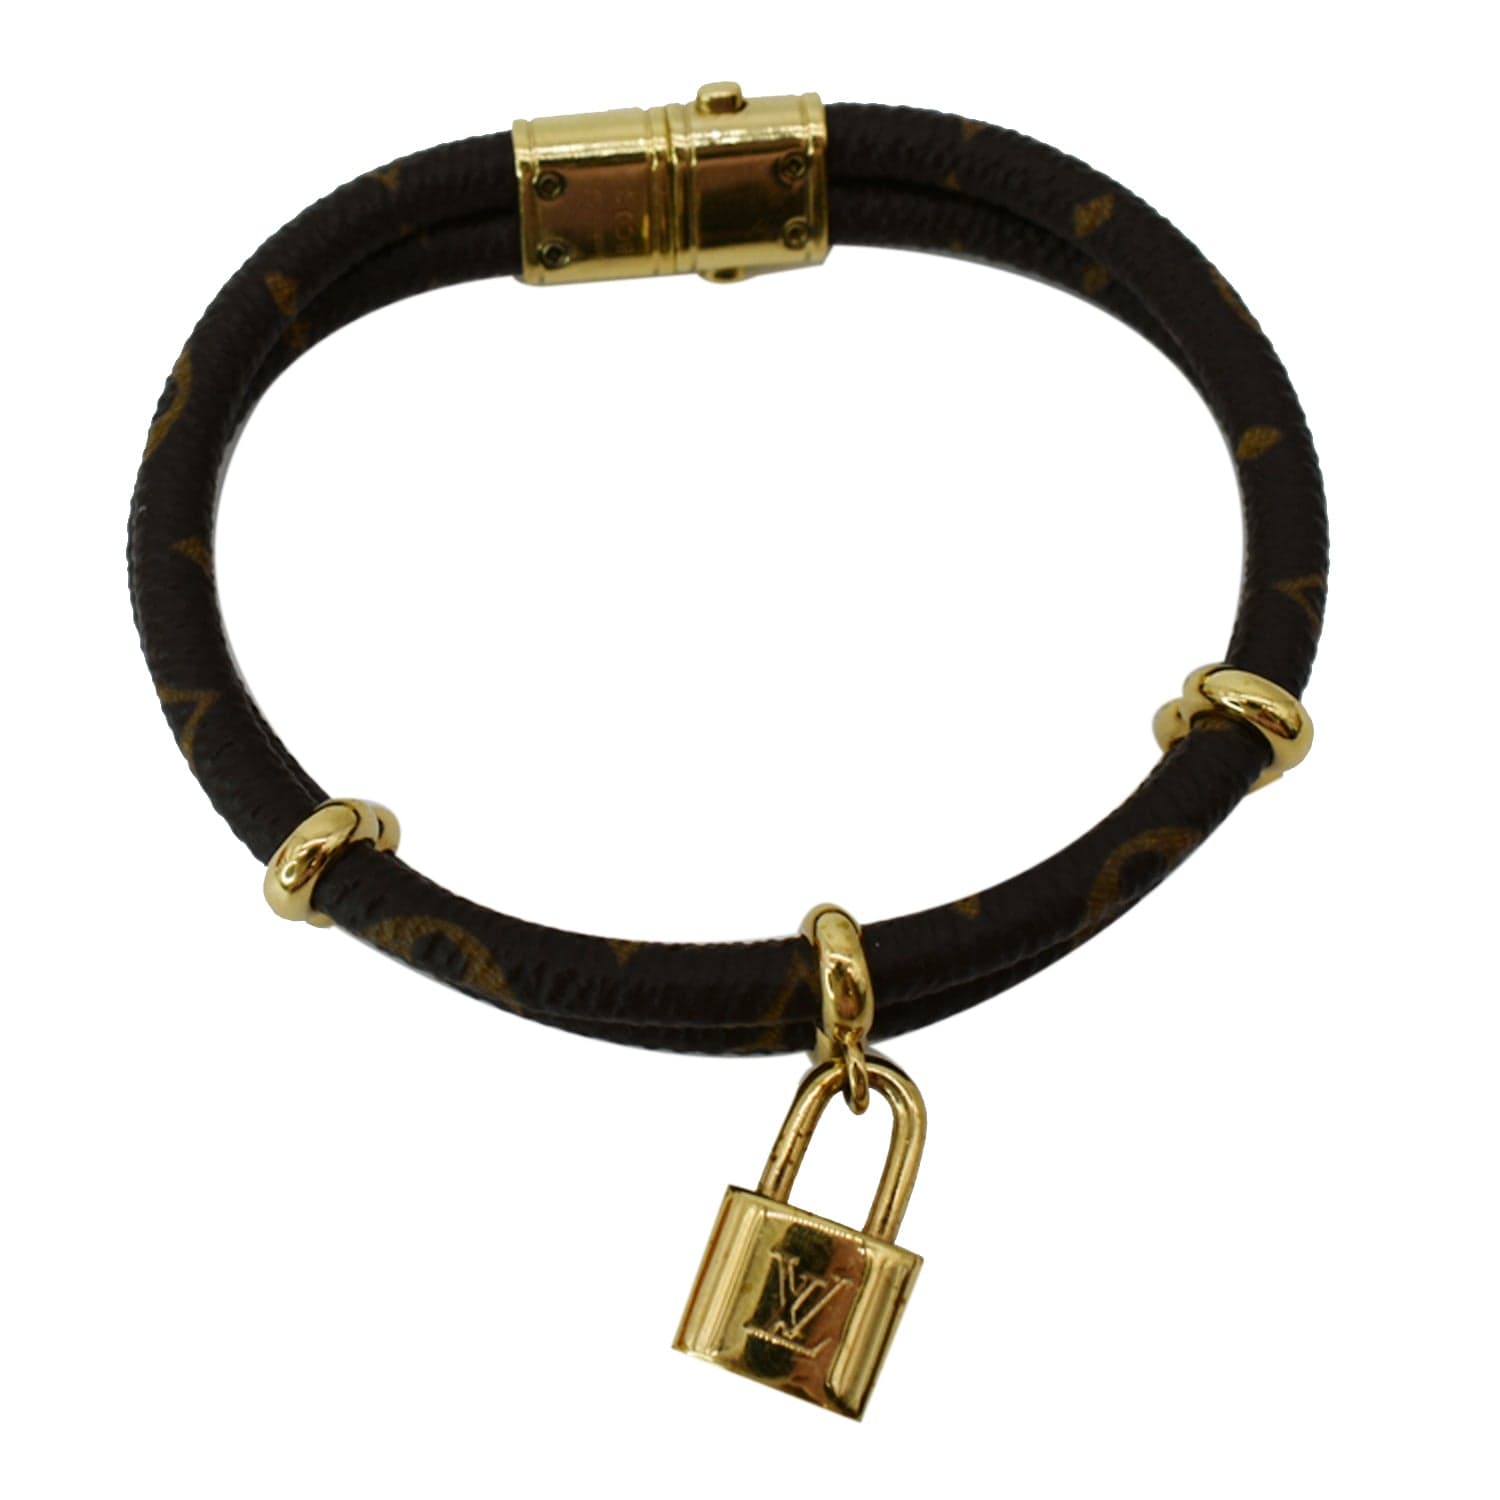 Louis Vuitton Keep It Twice Bracelet